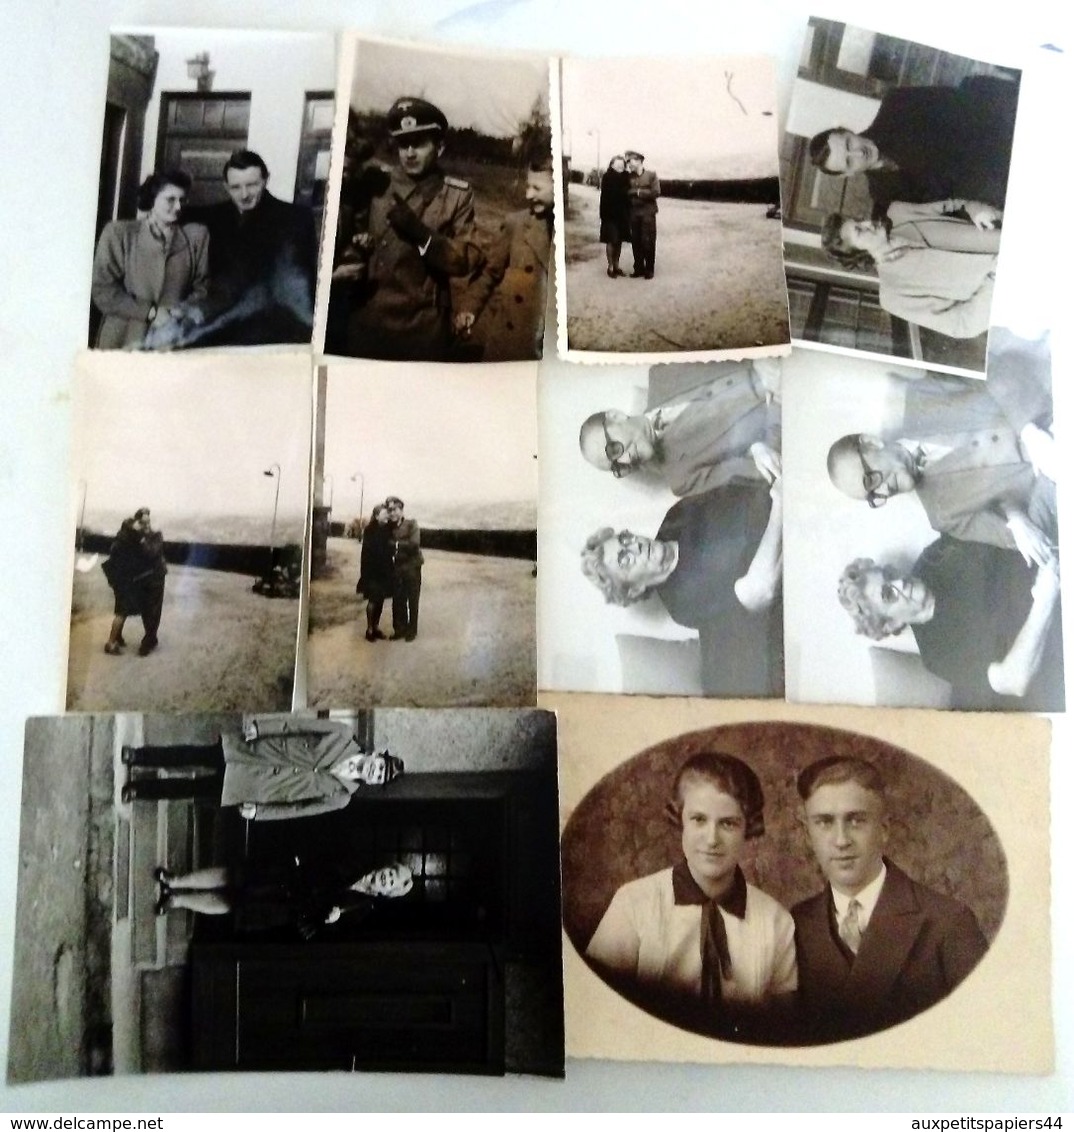 Lot de 200 Photos Originales sur le Thème du Couple vers 19400/1970 - Voir Photos